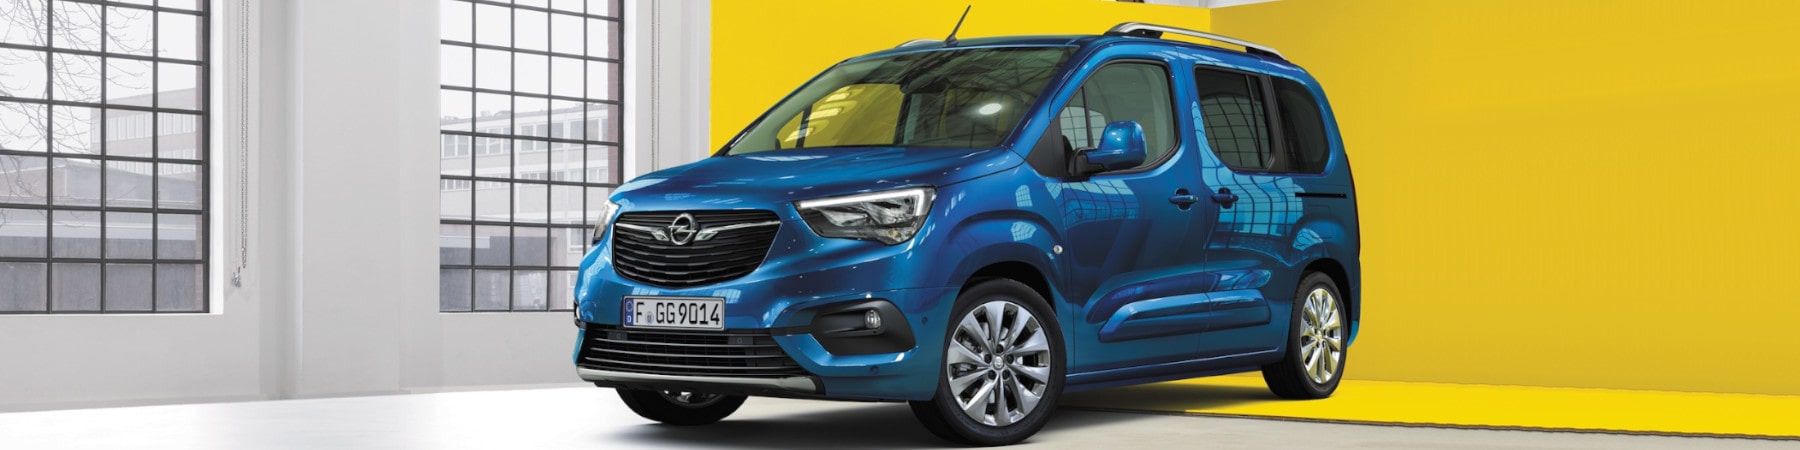 UV-Užitkové vozy Opel